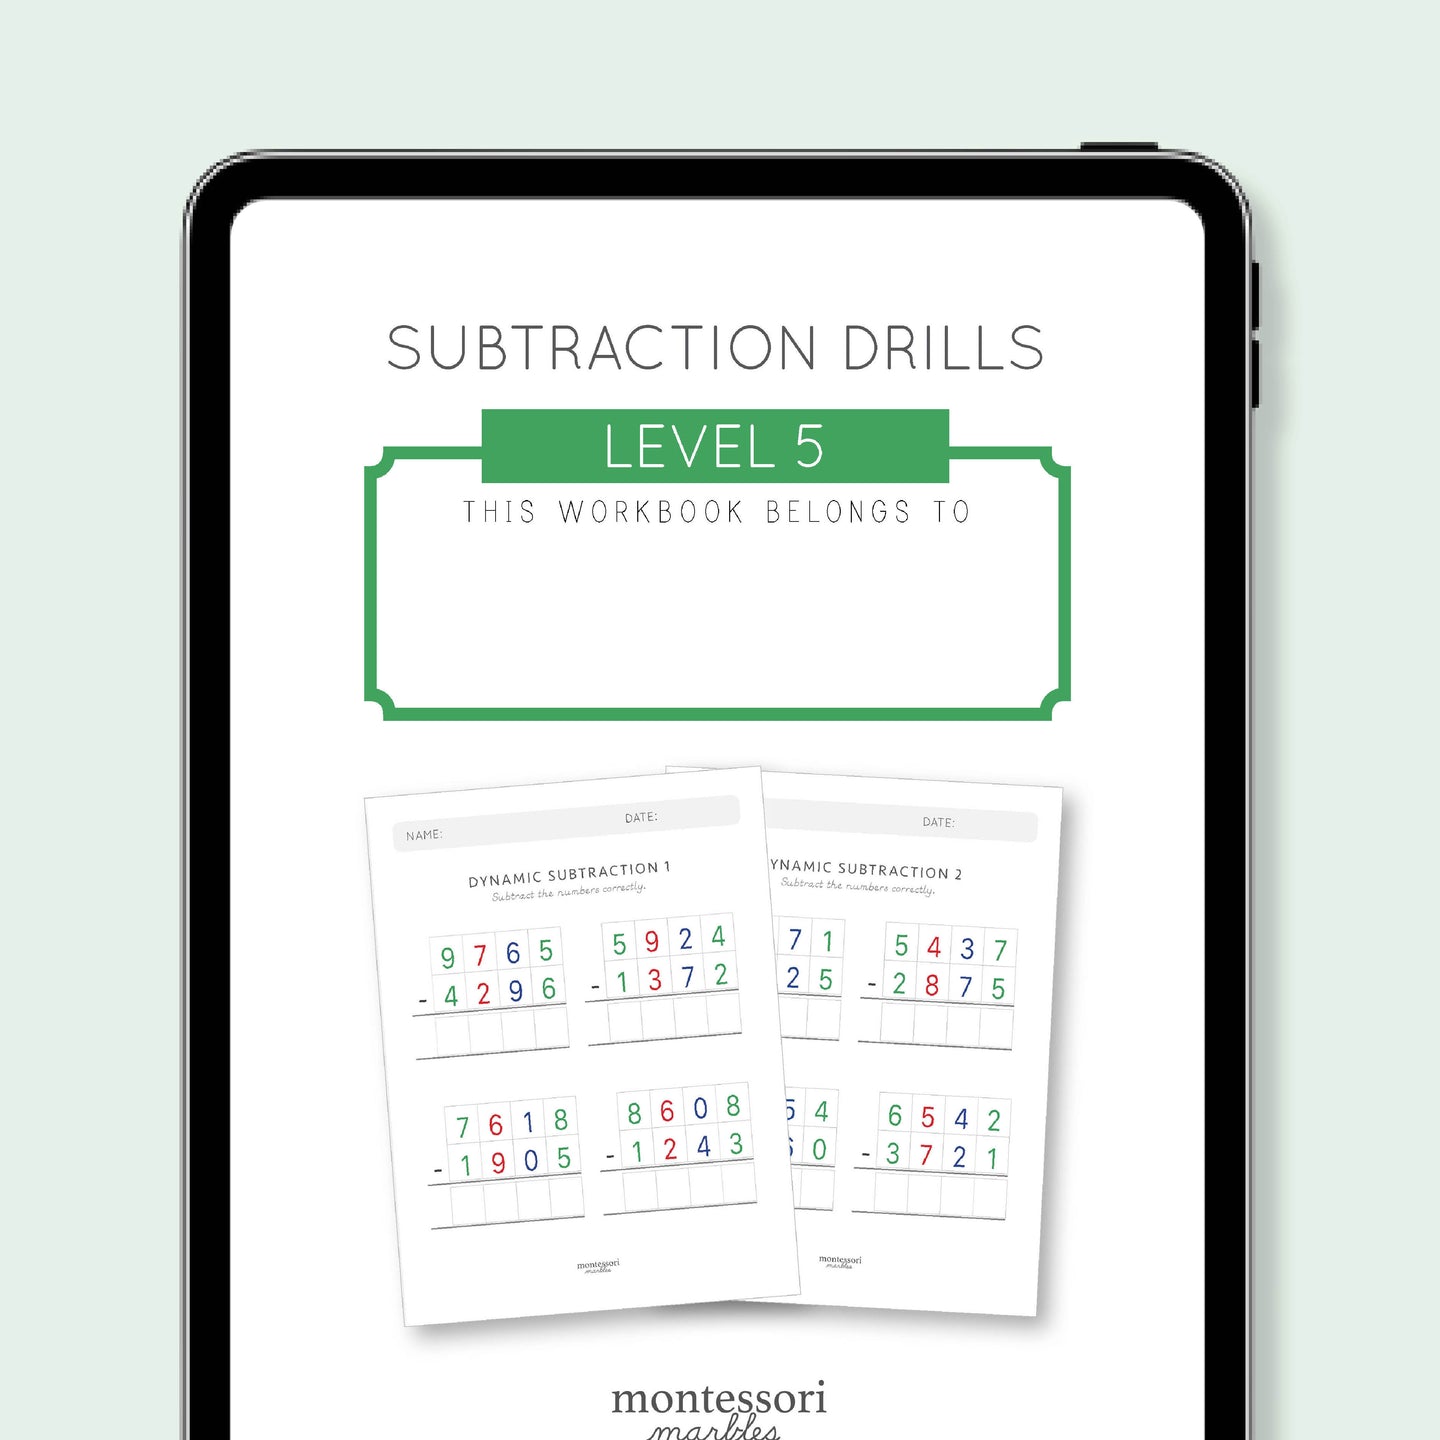 Subtraction Drills Workbook Level 5